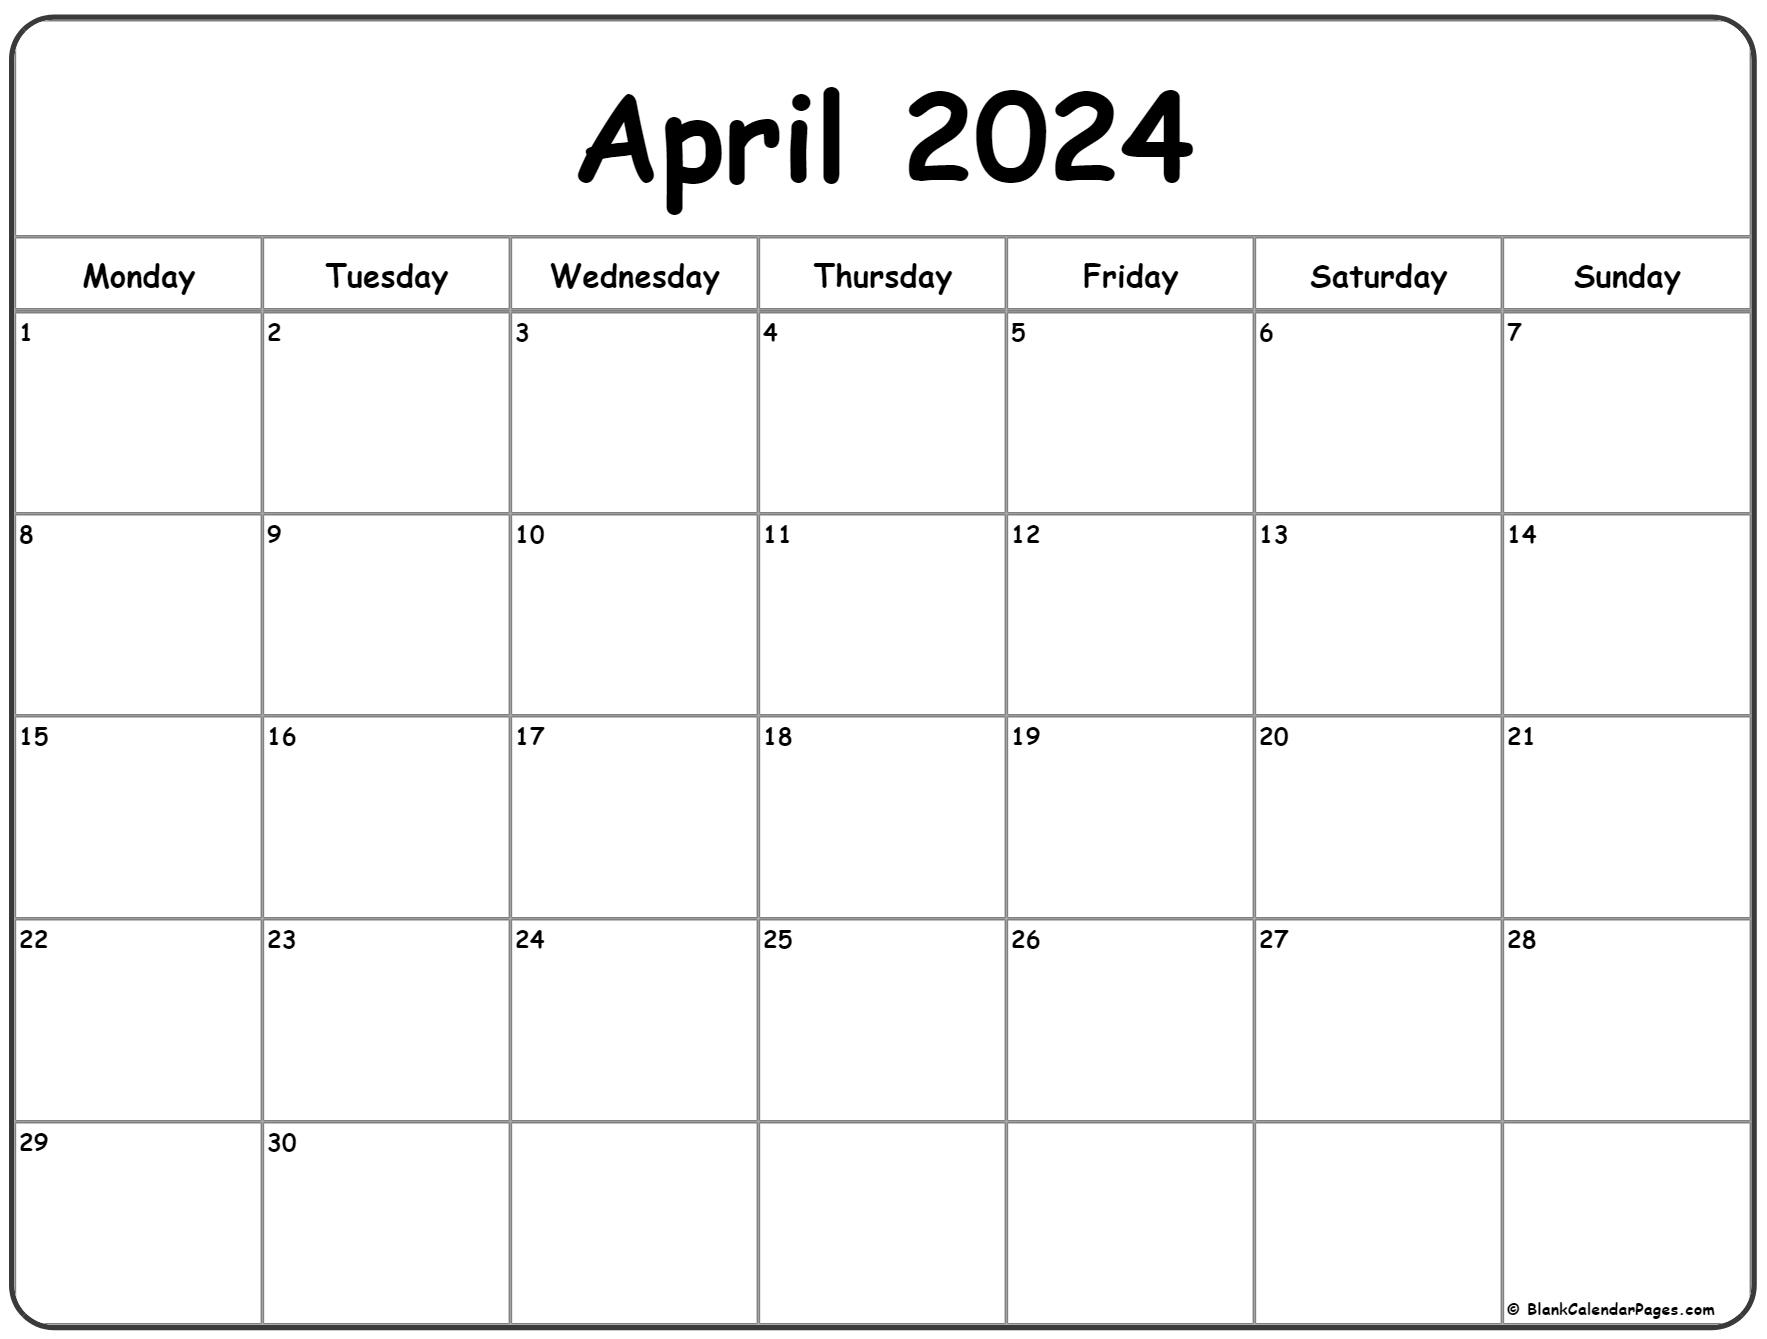 April 2024 Monday Calendar | Monday To Sunday for 2024 Printable Calendar April